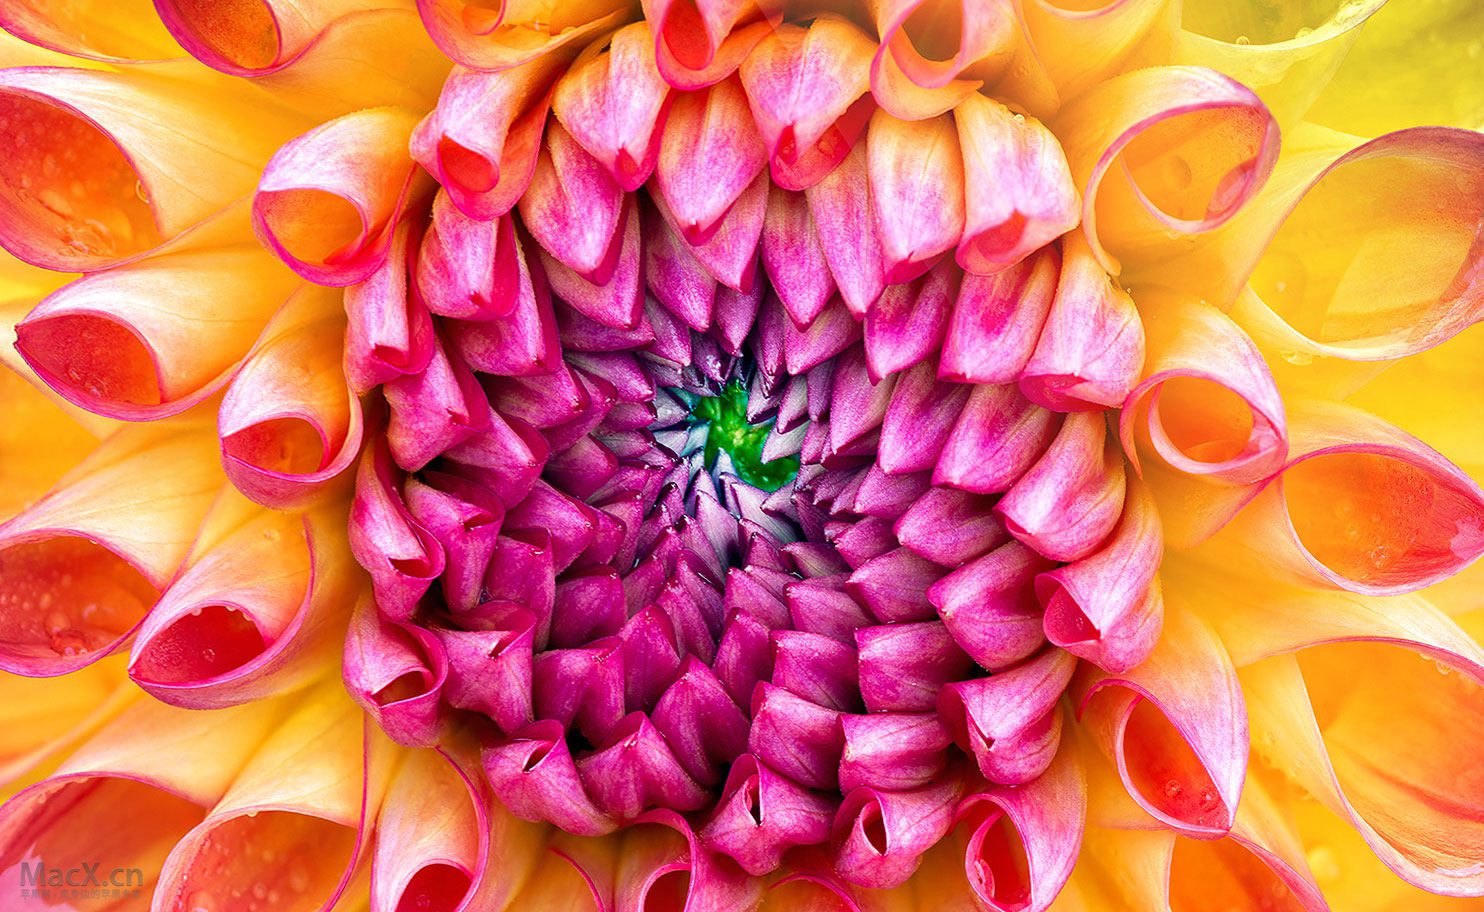  httphigh definition wallpapercomphotomac flower wallpaperhtml